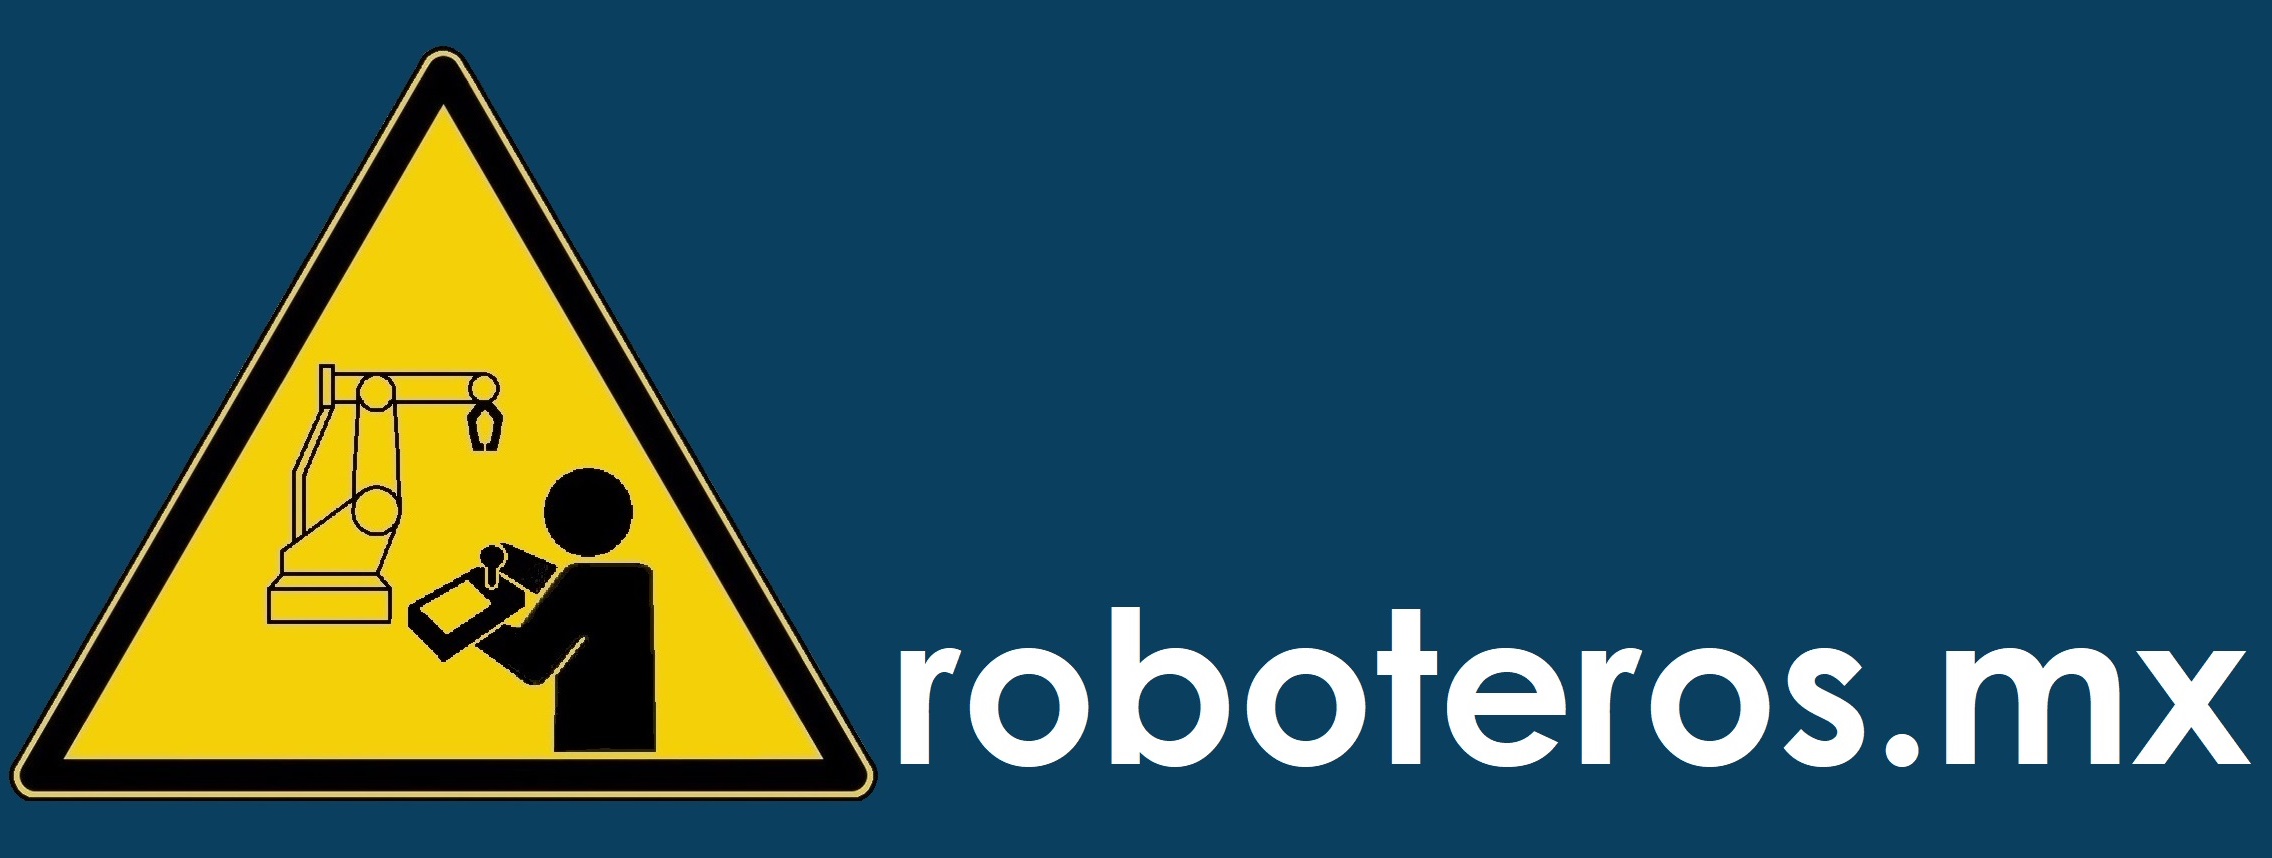 Robot, Robots, ABB, Robotics, roboteros.mx, robótica, robótica industrial, robot industrial, roboteros, automatización.